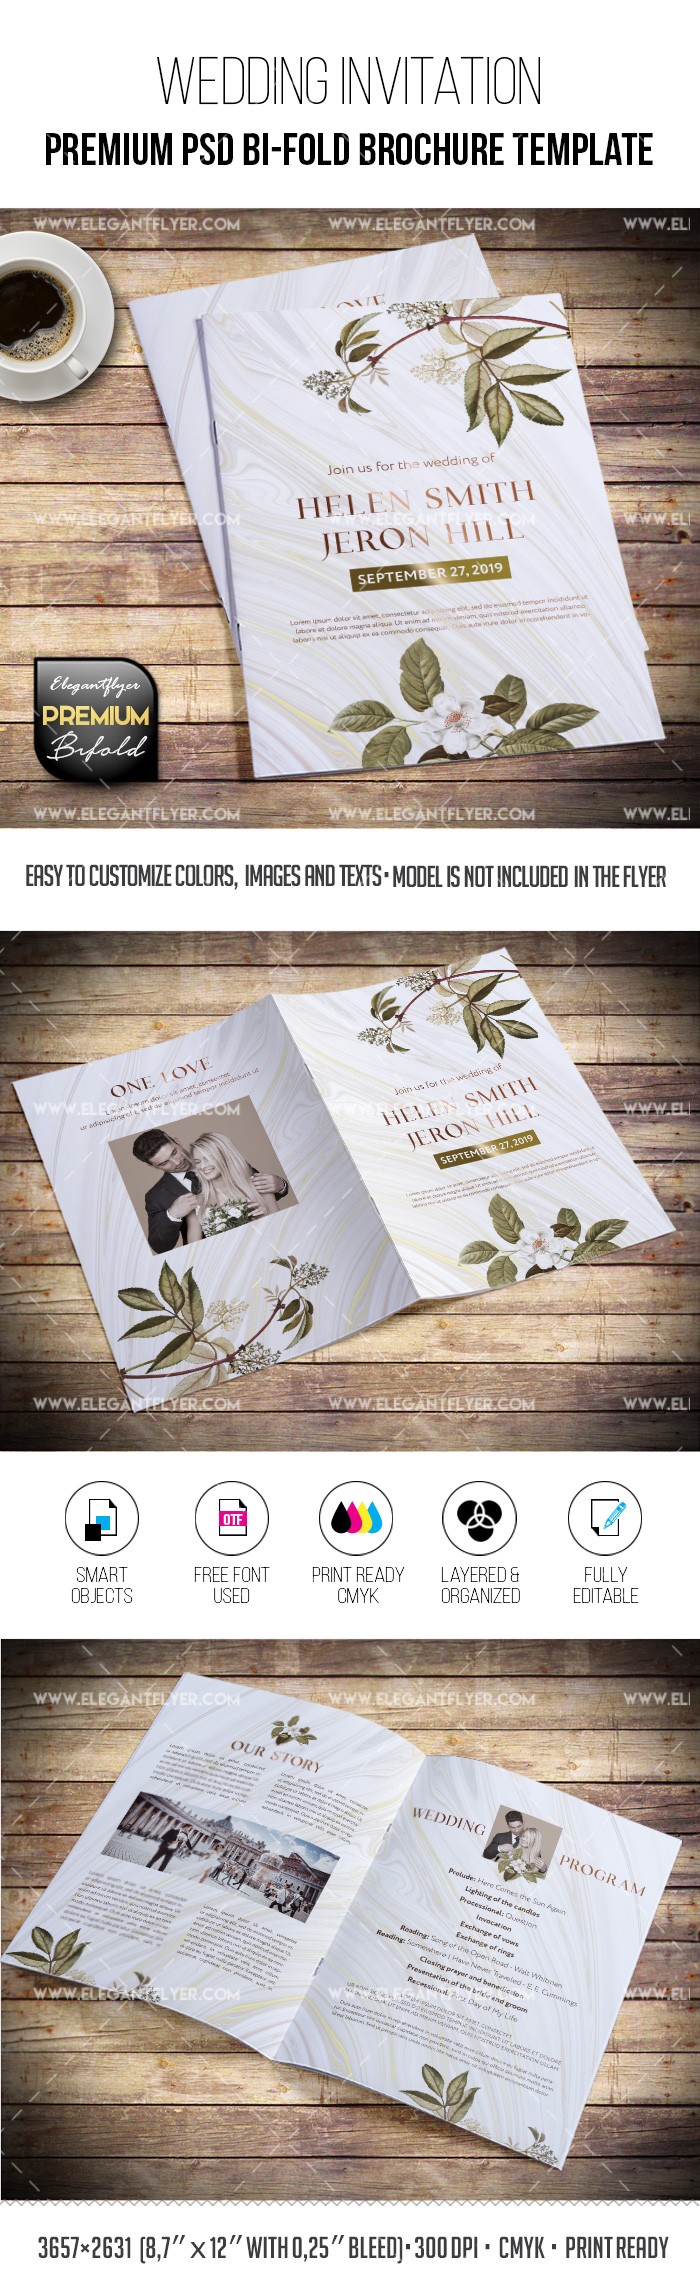 Mon mariage - Modèle de brochure PSD à deux volets by ElegantFlyer